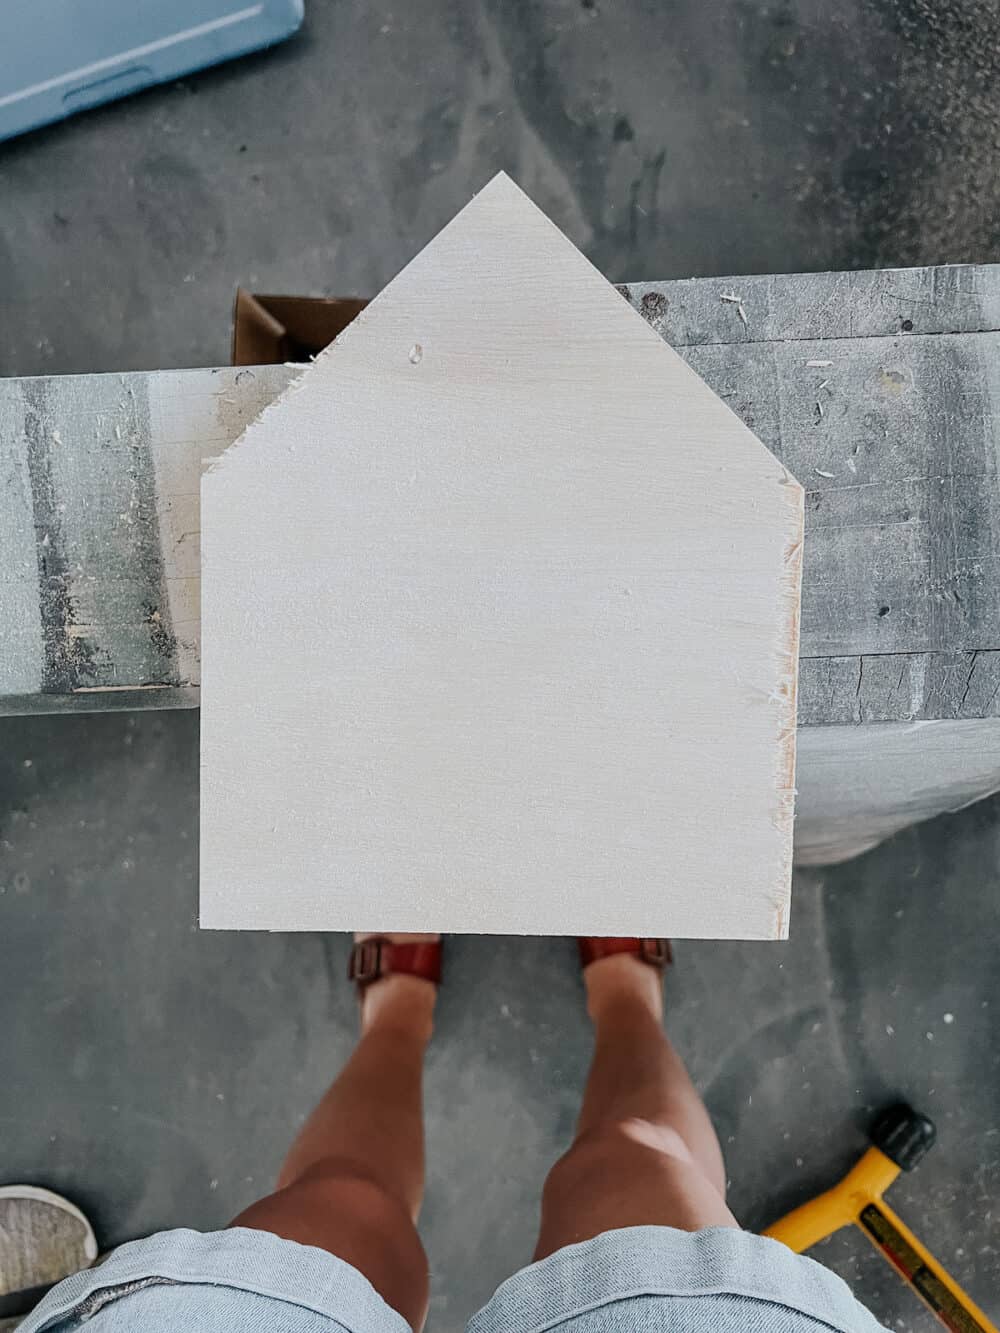 Piece of plywood shaped like a house 